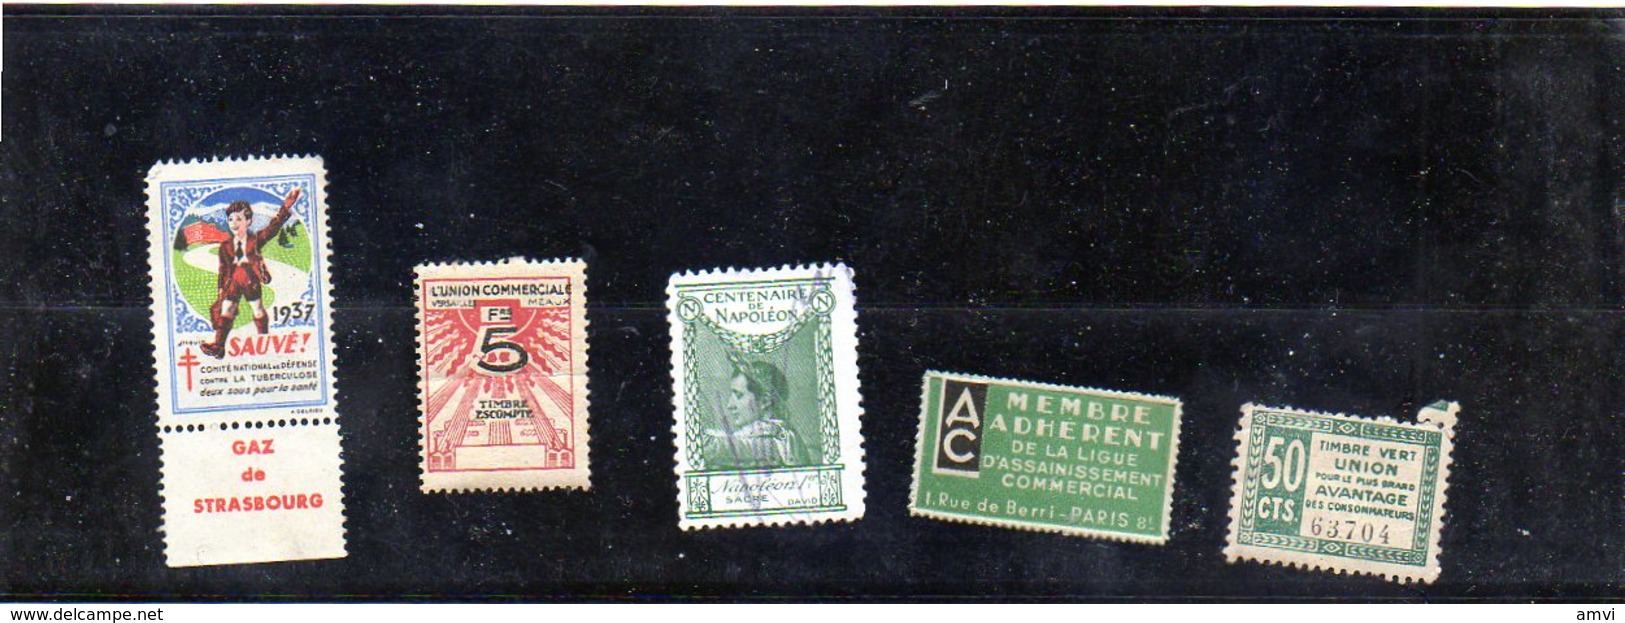 3876 - 5 Vignettes Tuberculose  1937  - Ligue Assainissement - Union Commerciale Plié Centenaire Napoleon Timbre Vert - Etichette Di Fantasia